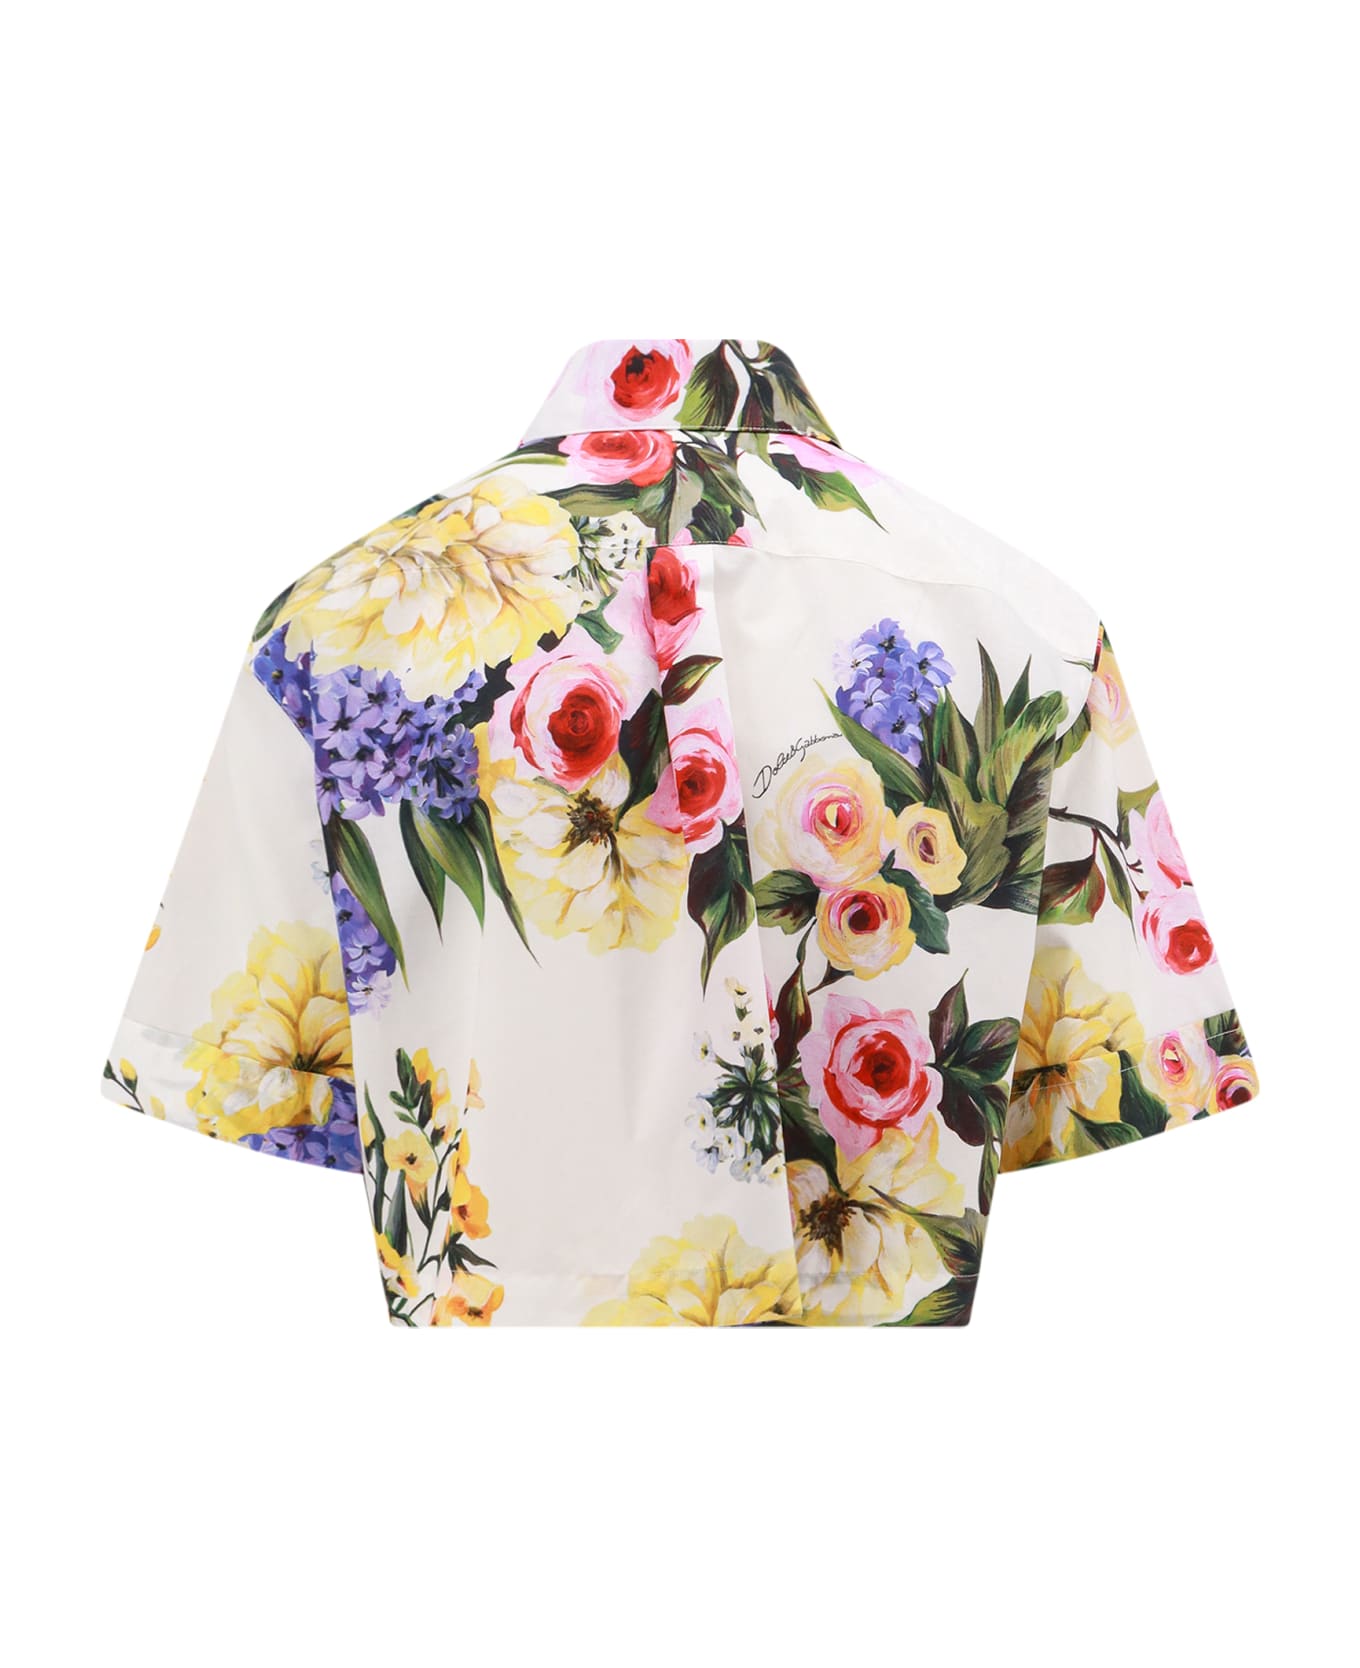 Dolce & Gabbana Cotton Poplin Shirt - Multicolor